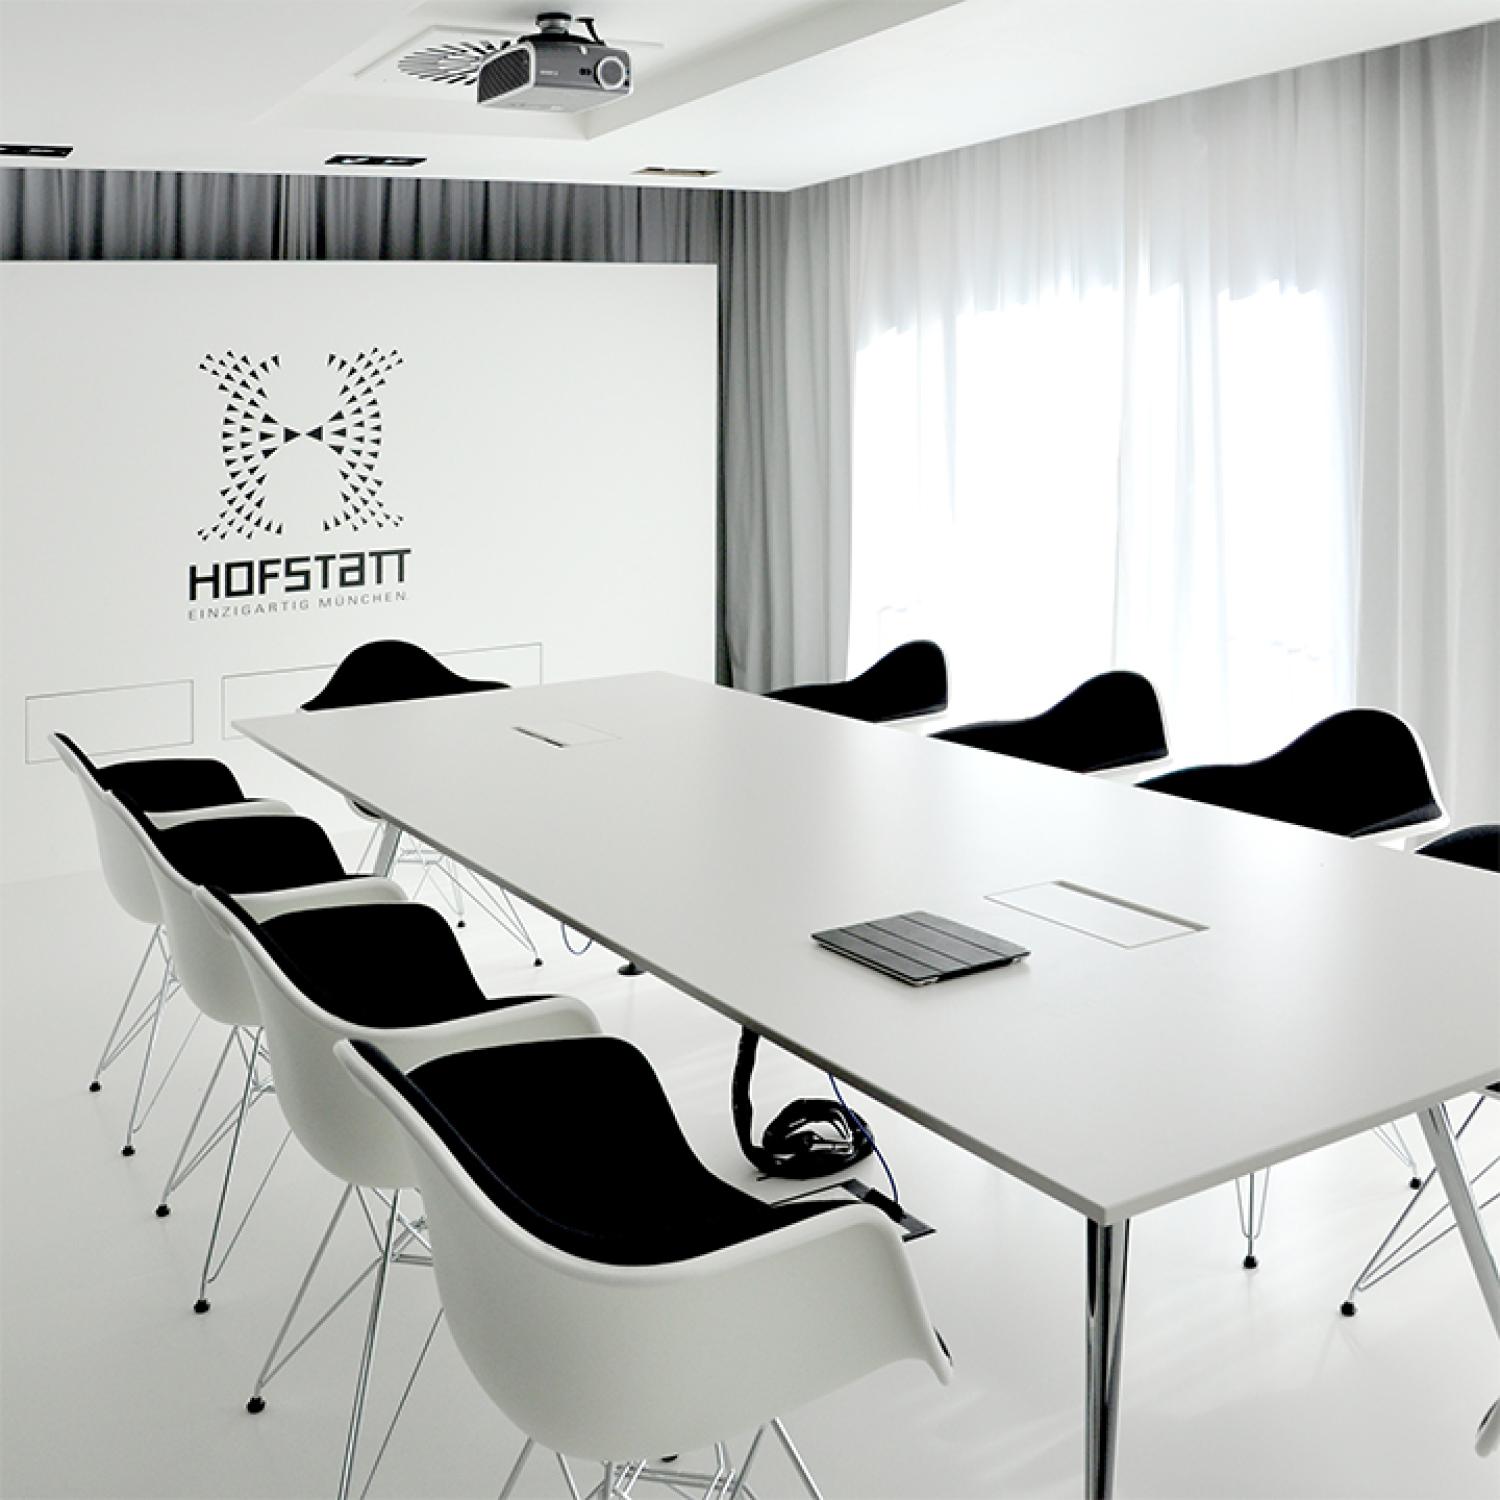 Hofstatt München Meeting-Room